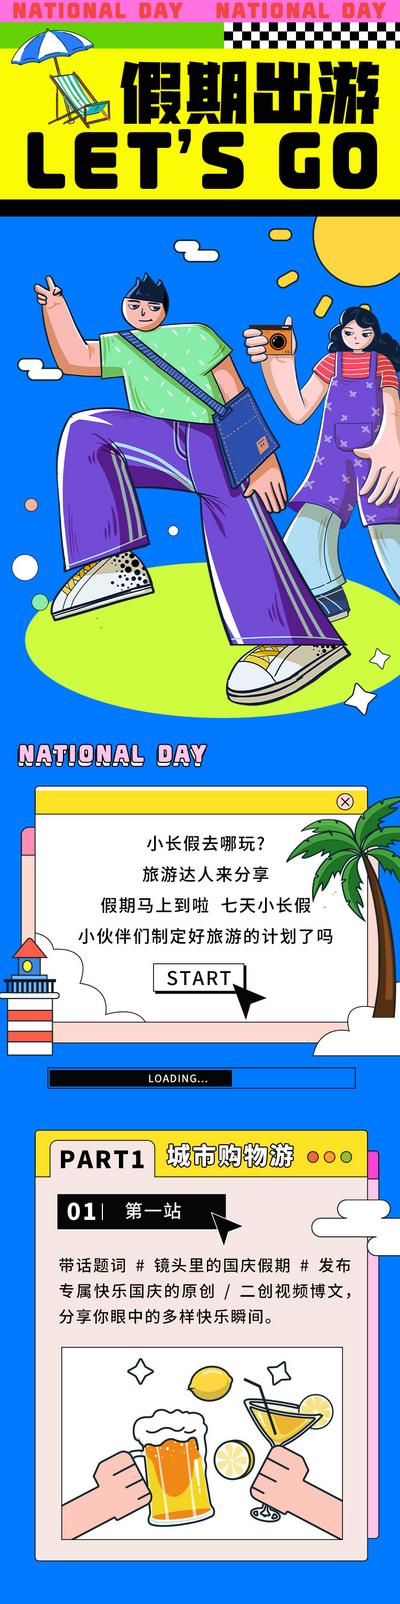 南门网 广告 海报 旅游 假期 推文 长图 卡通 攻略